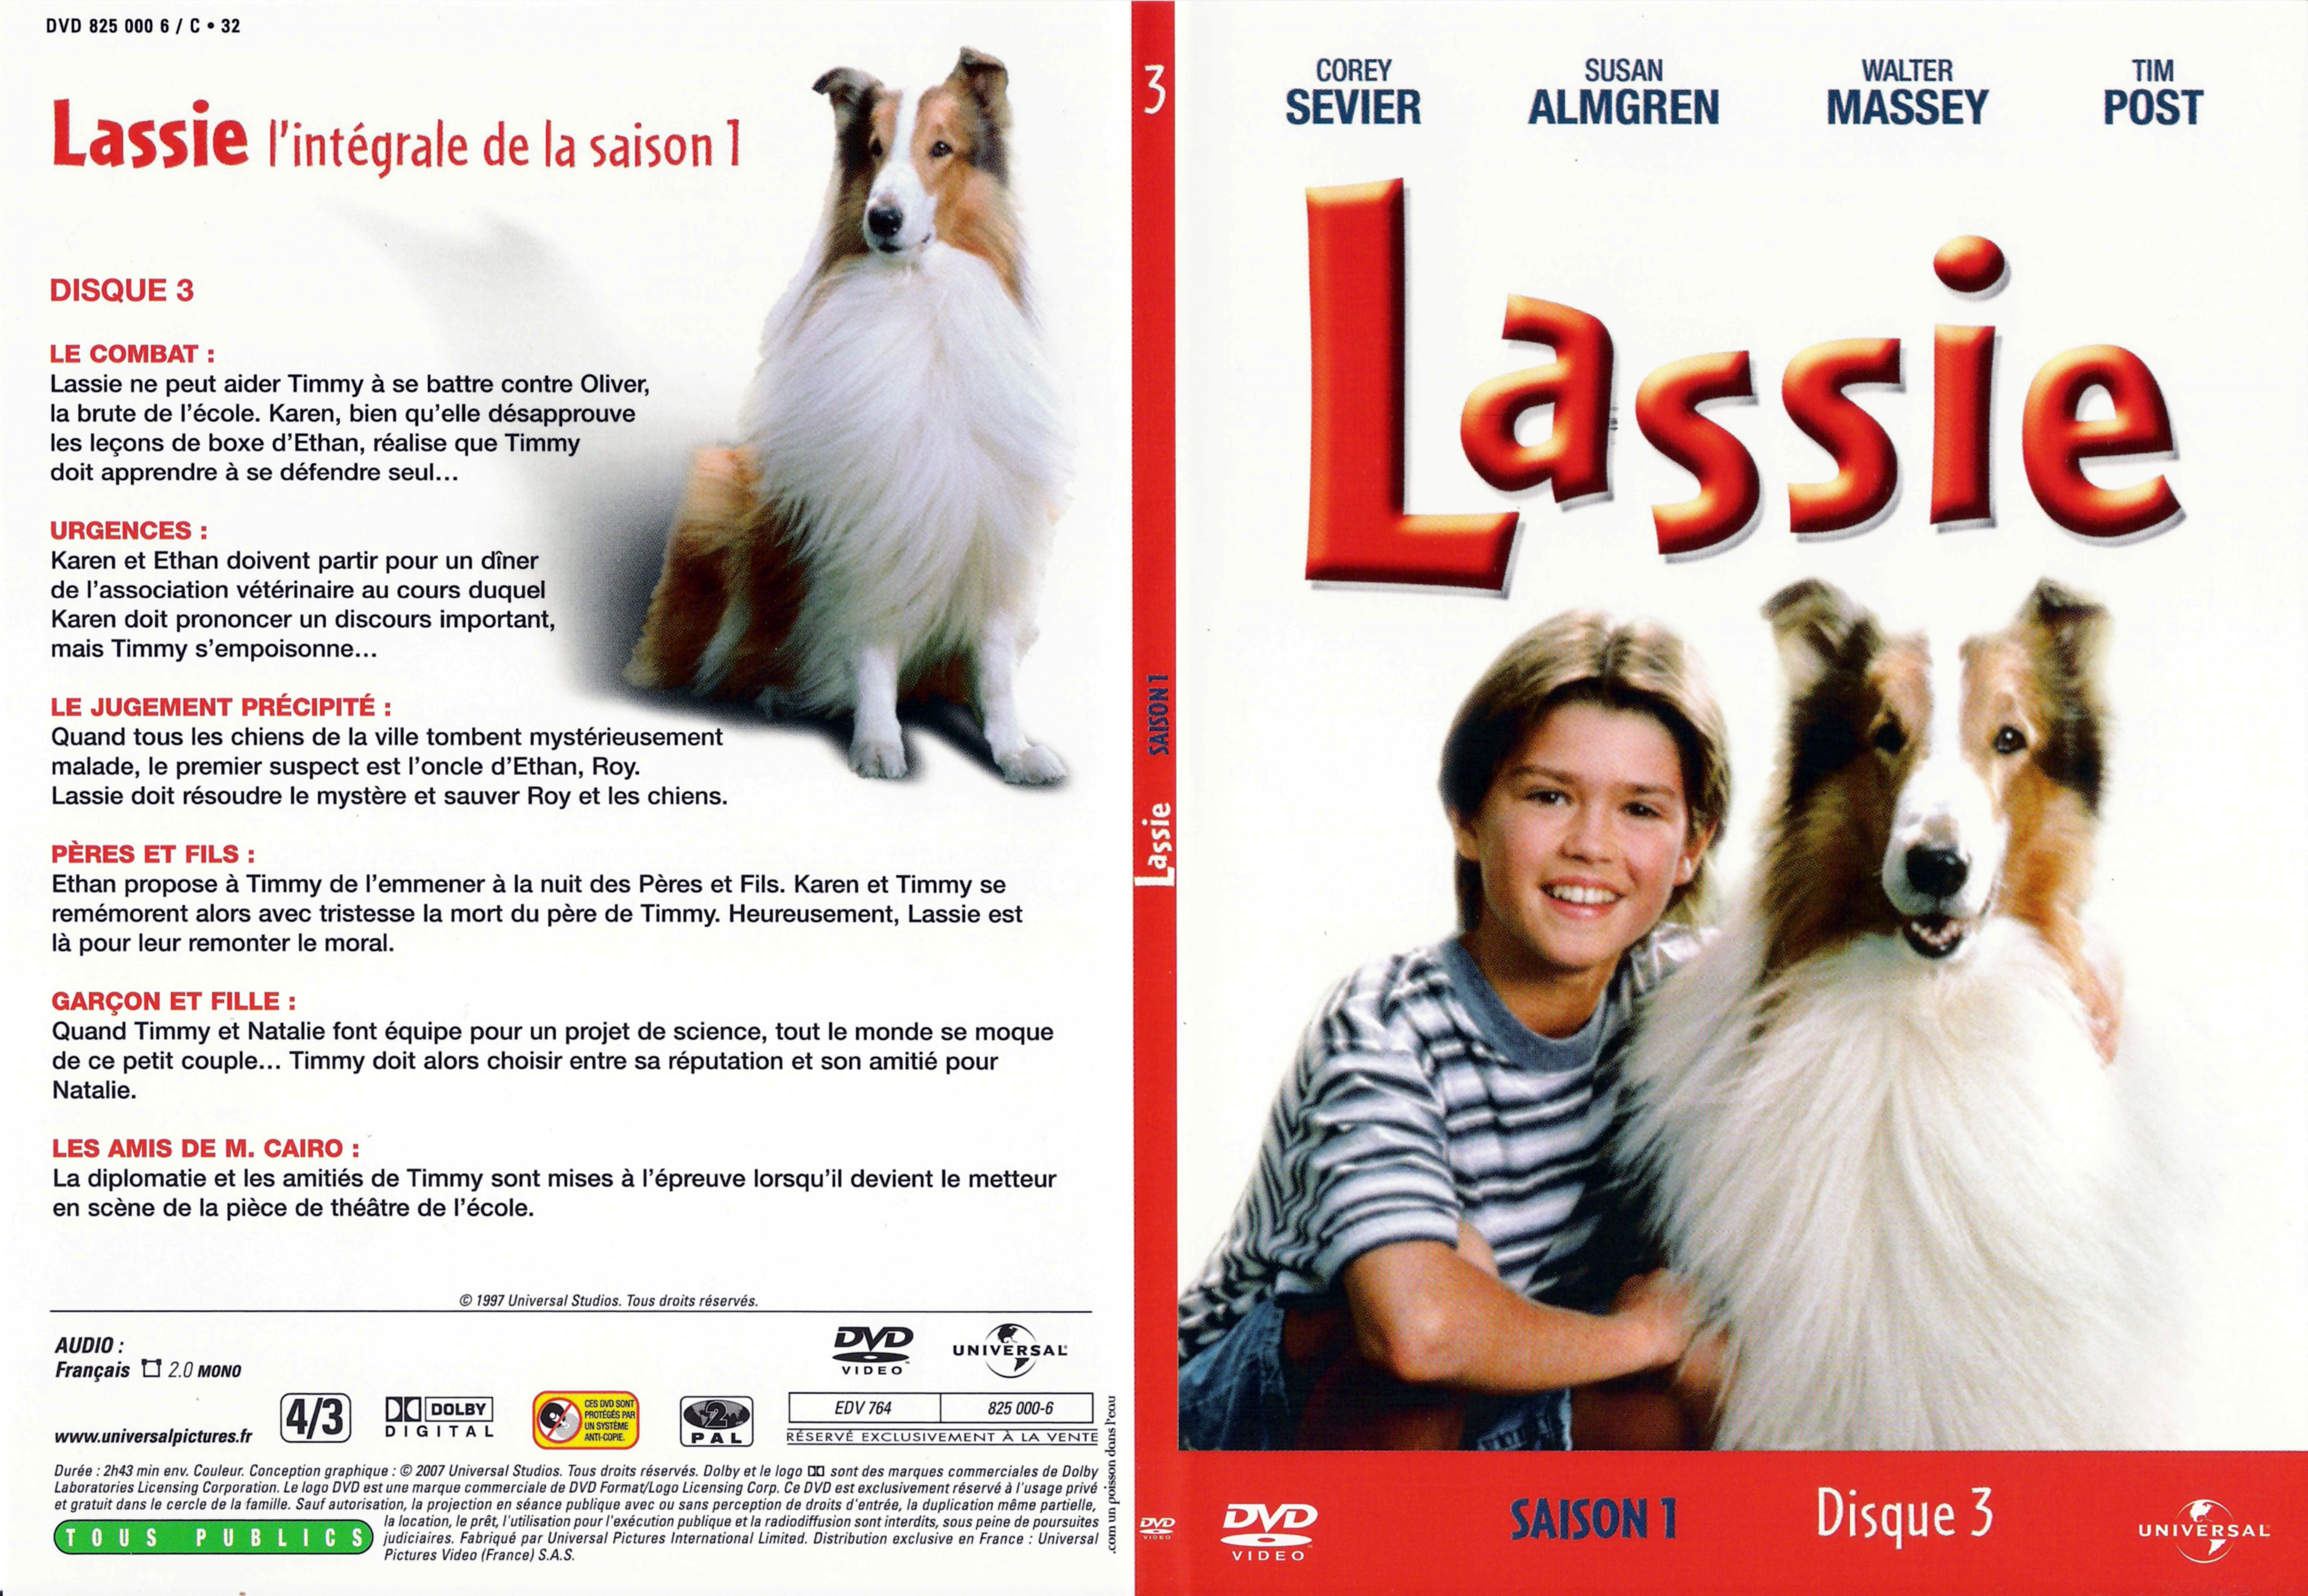 Jaquette DVD Lassie Saison 1 DVD 3